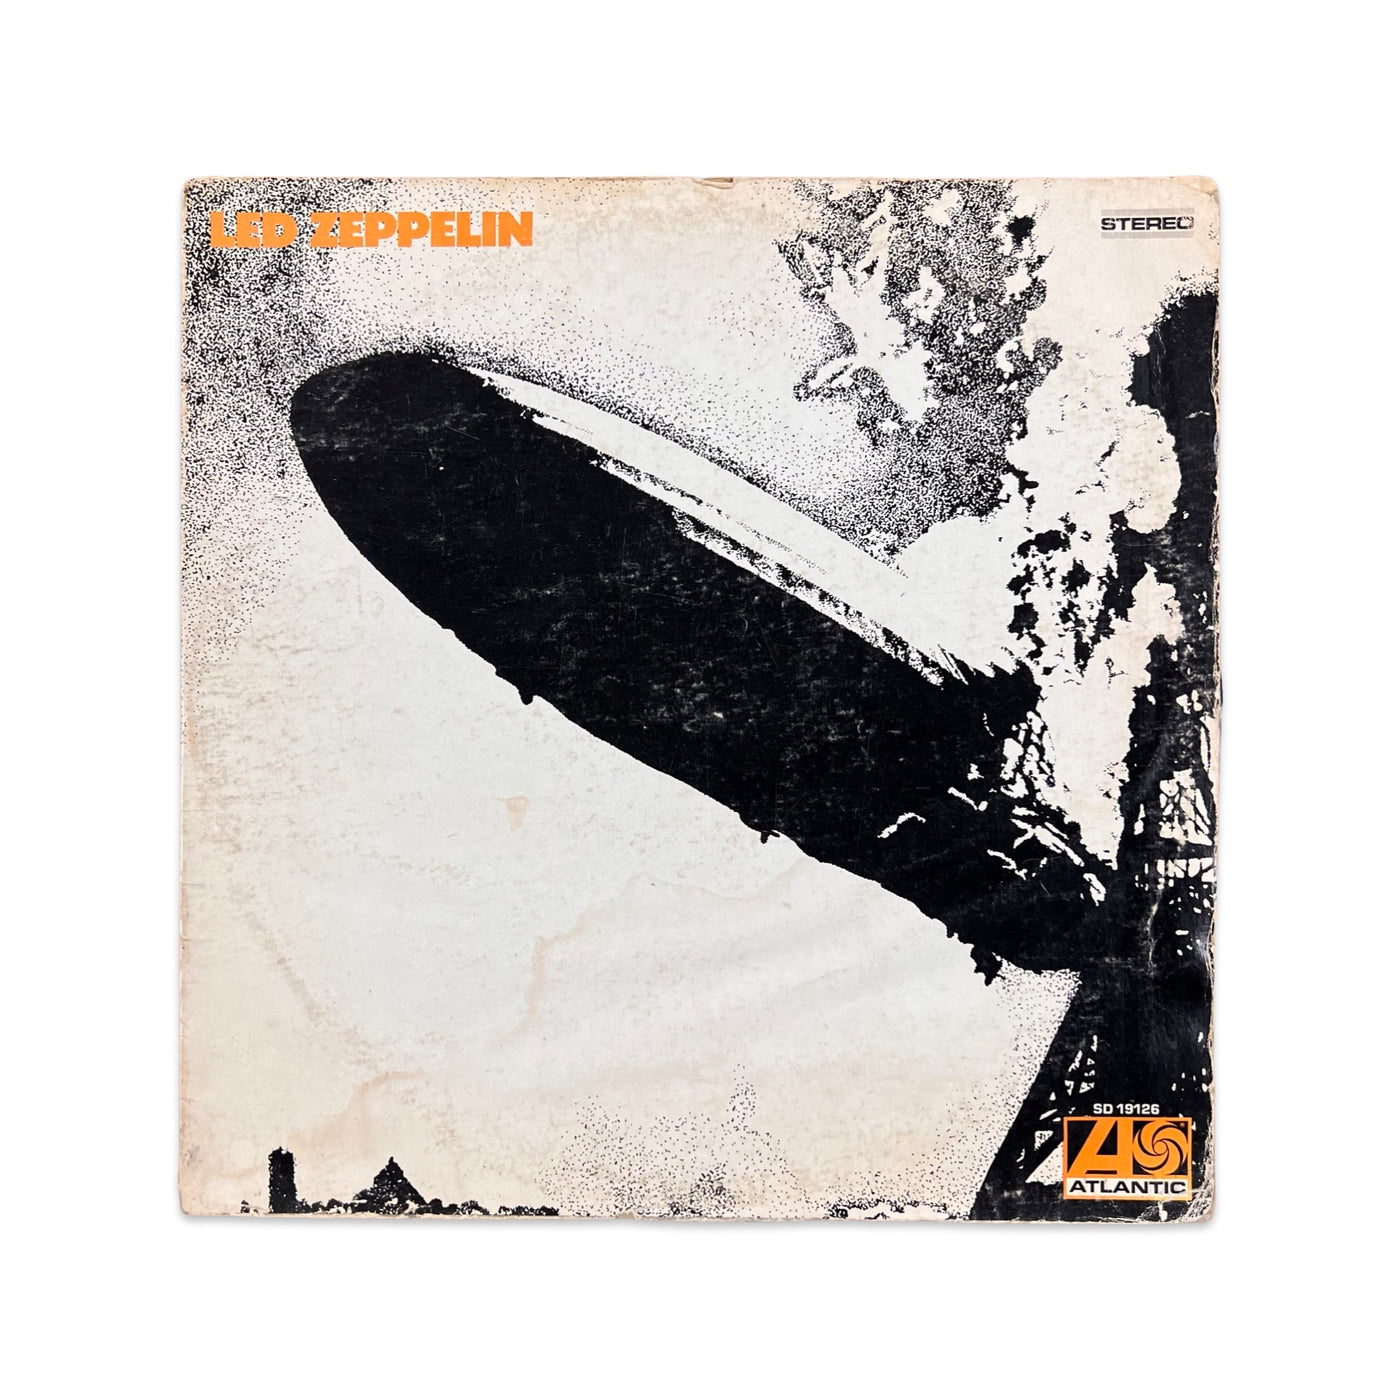 Led Zeppelin - Led Zeppelin - 1977 Reissue, Allied Pressing